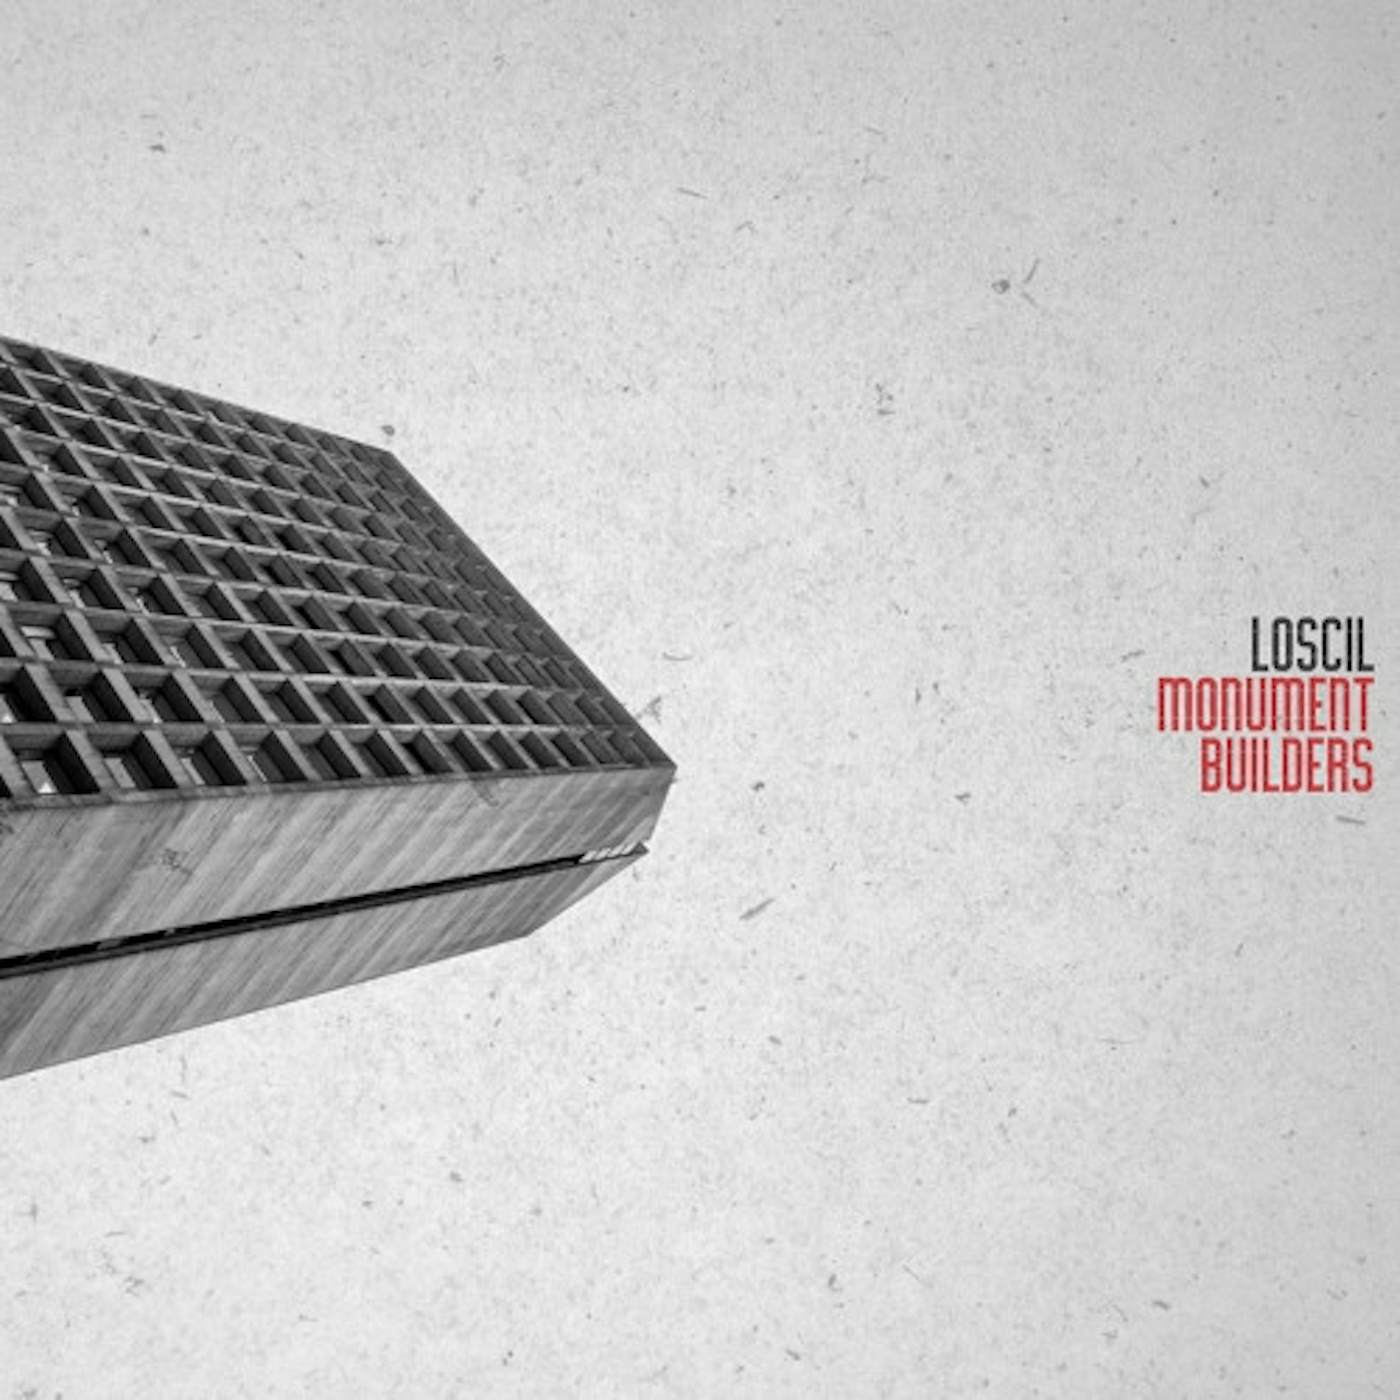 Loscil Monument Builders Vinyl Record